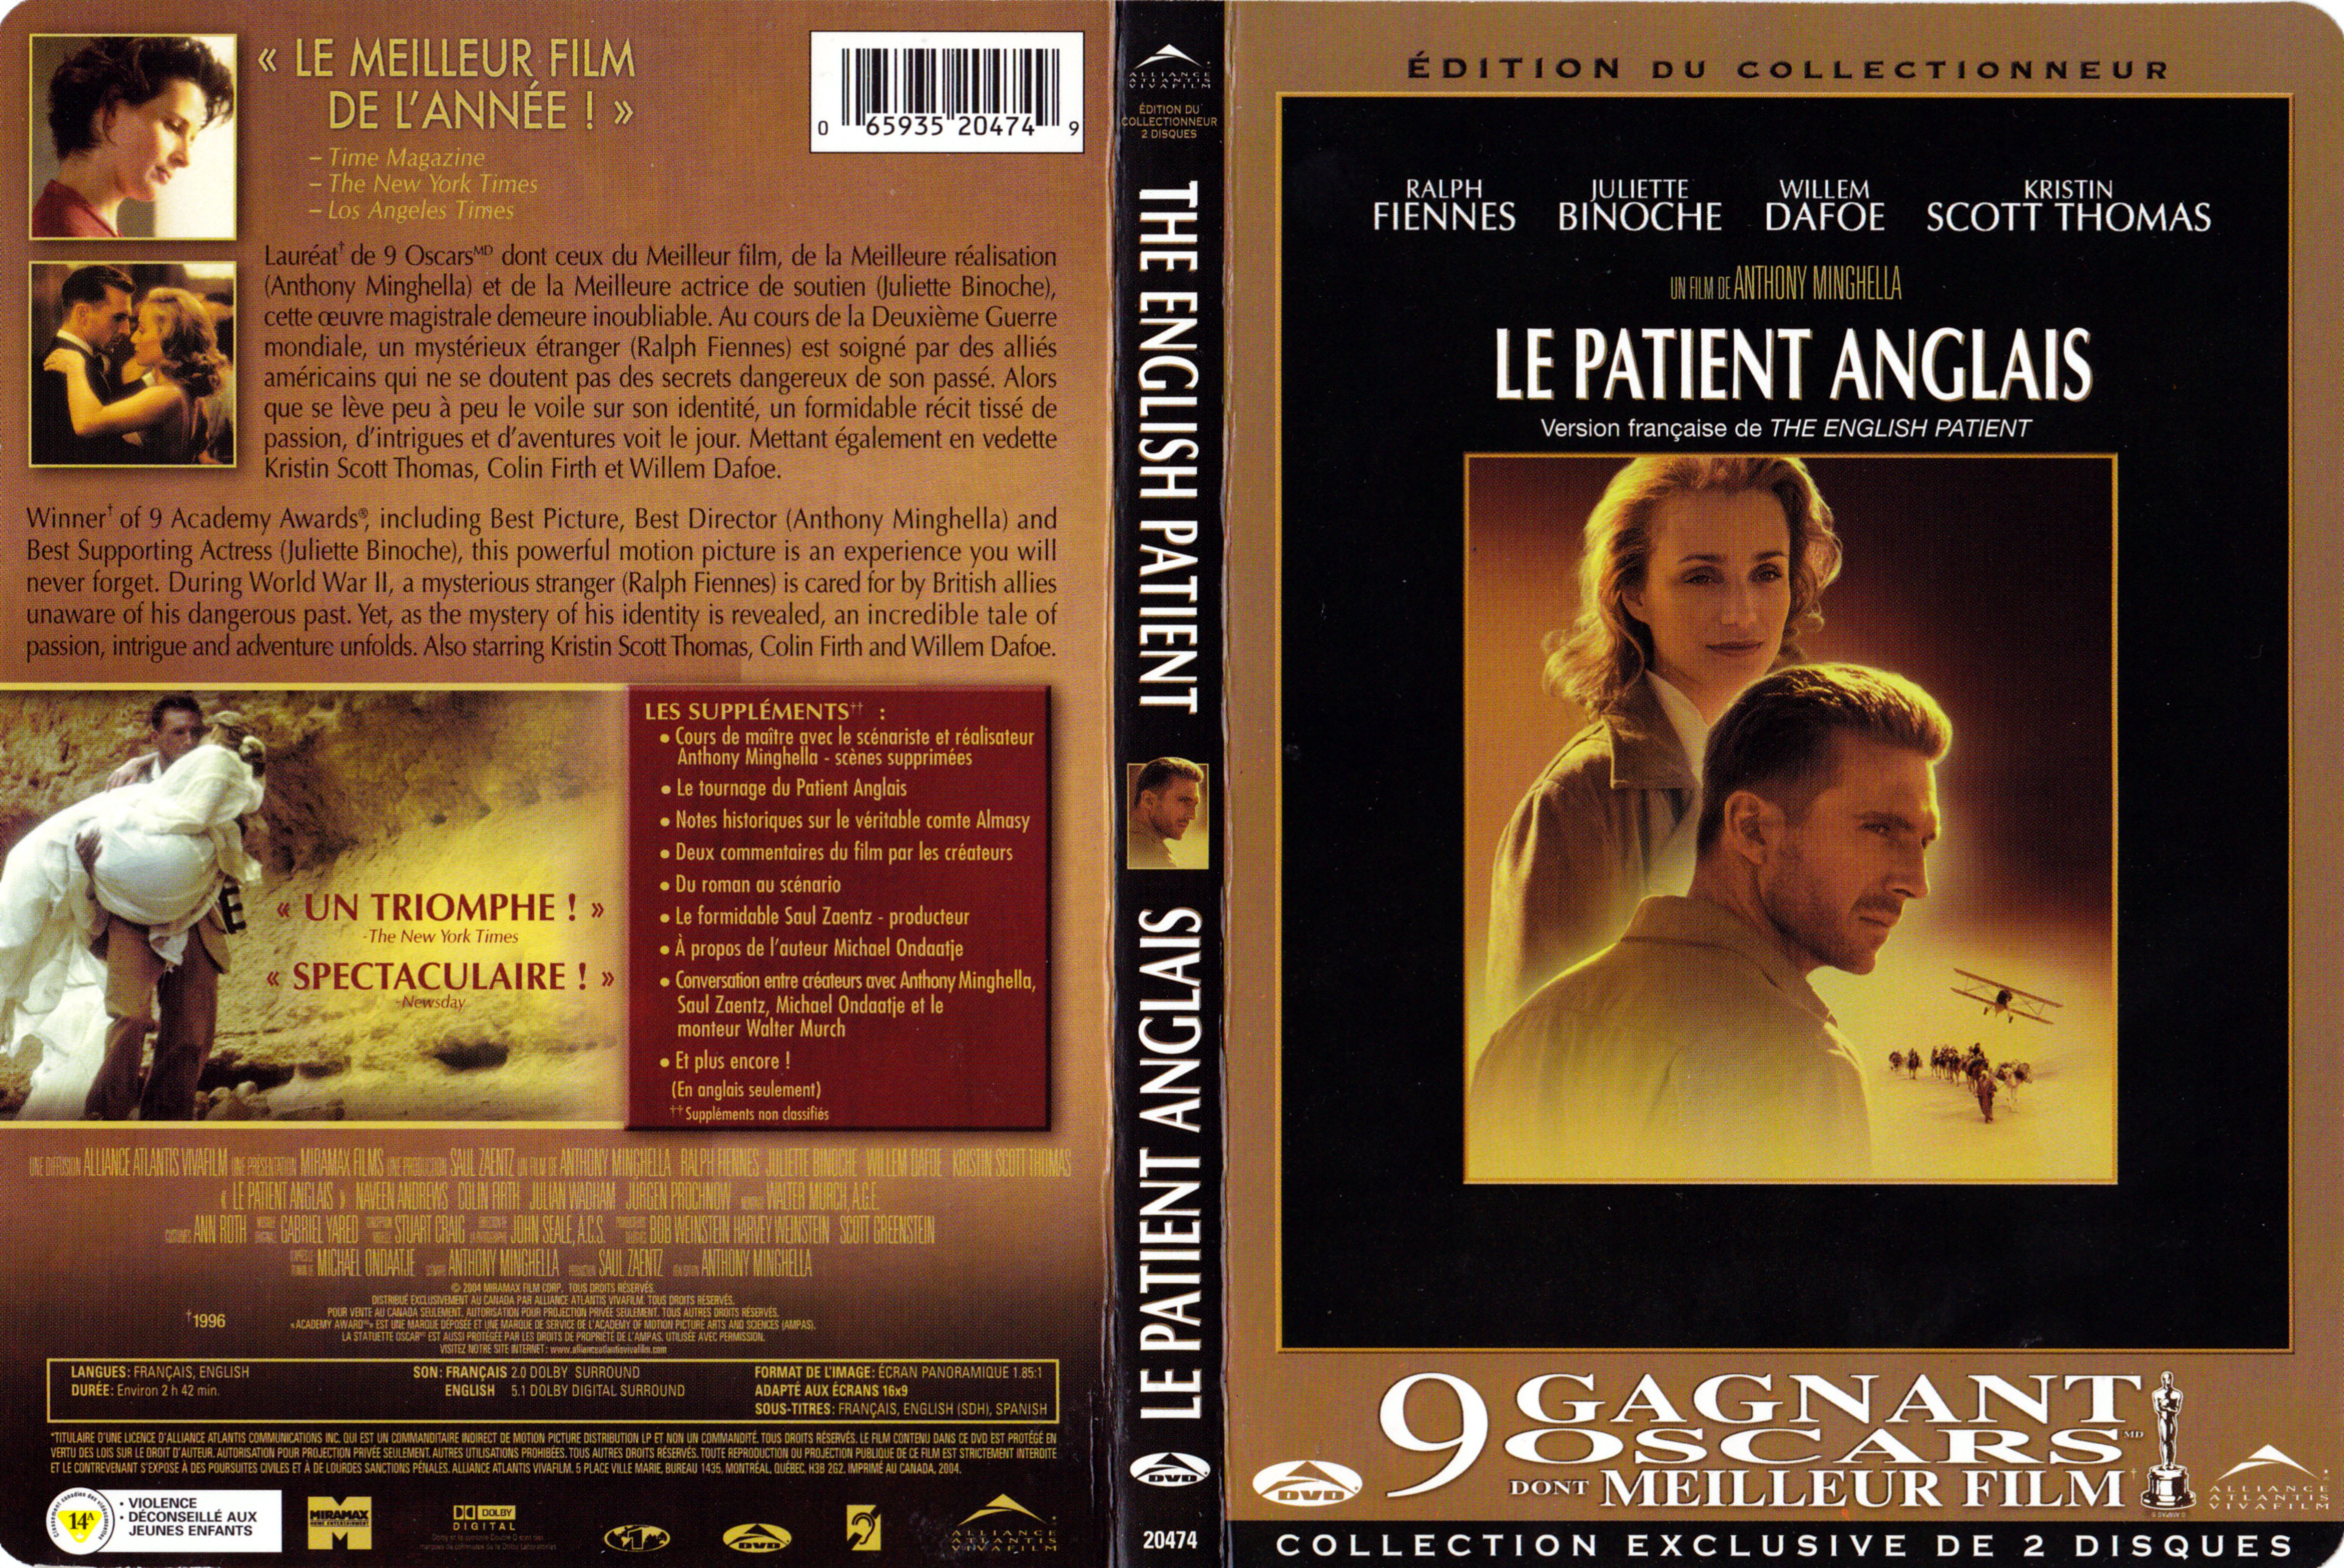 Jaquette DVD Le patient anglais (Canadienne)